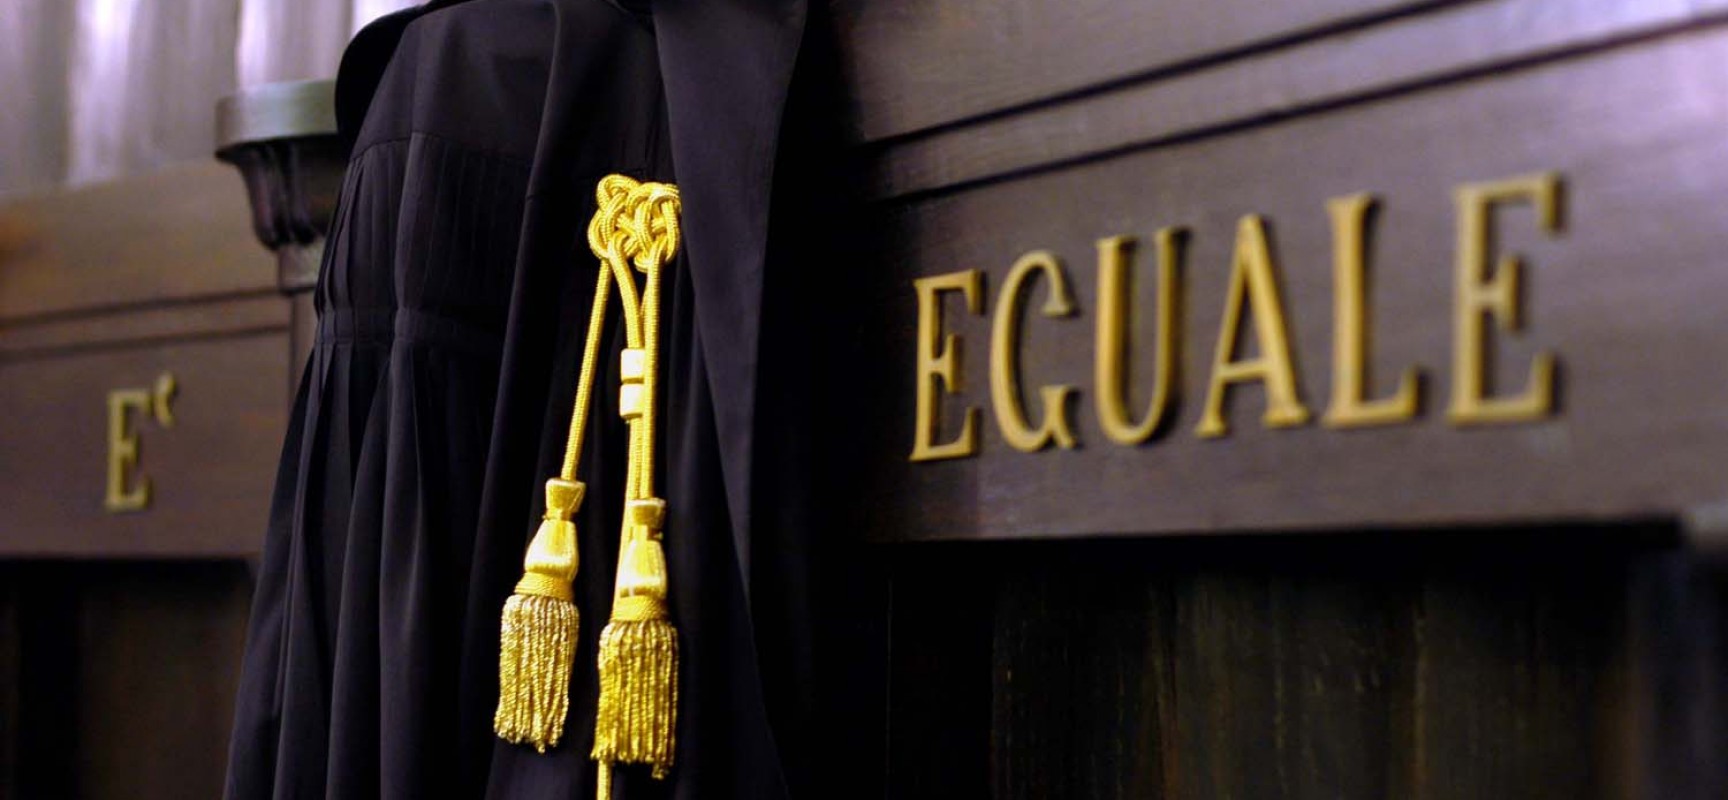 Elenco ammessi alle prove orali esame d’avvocato Ordine di Bari /ELENCO